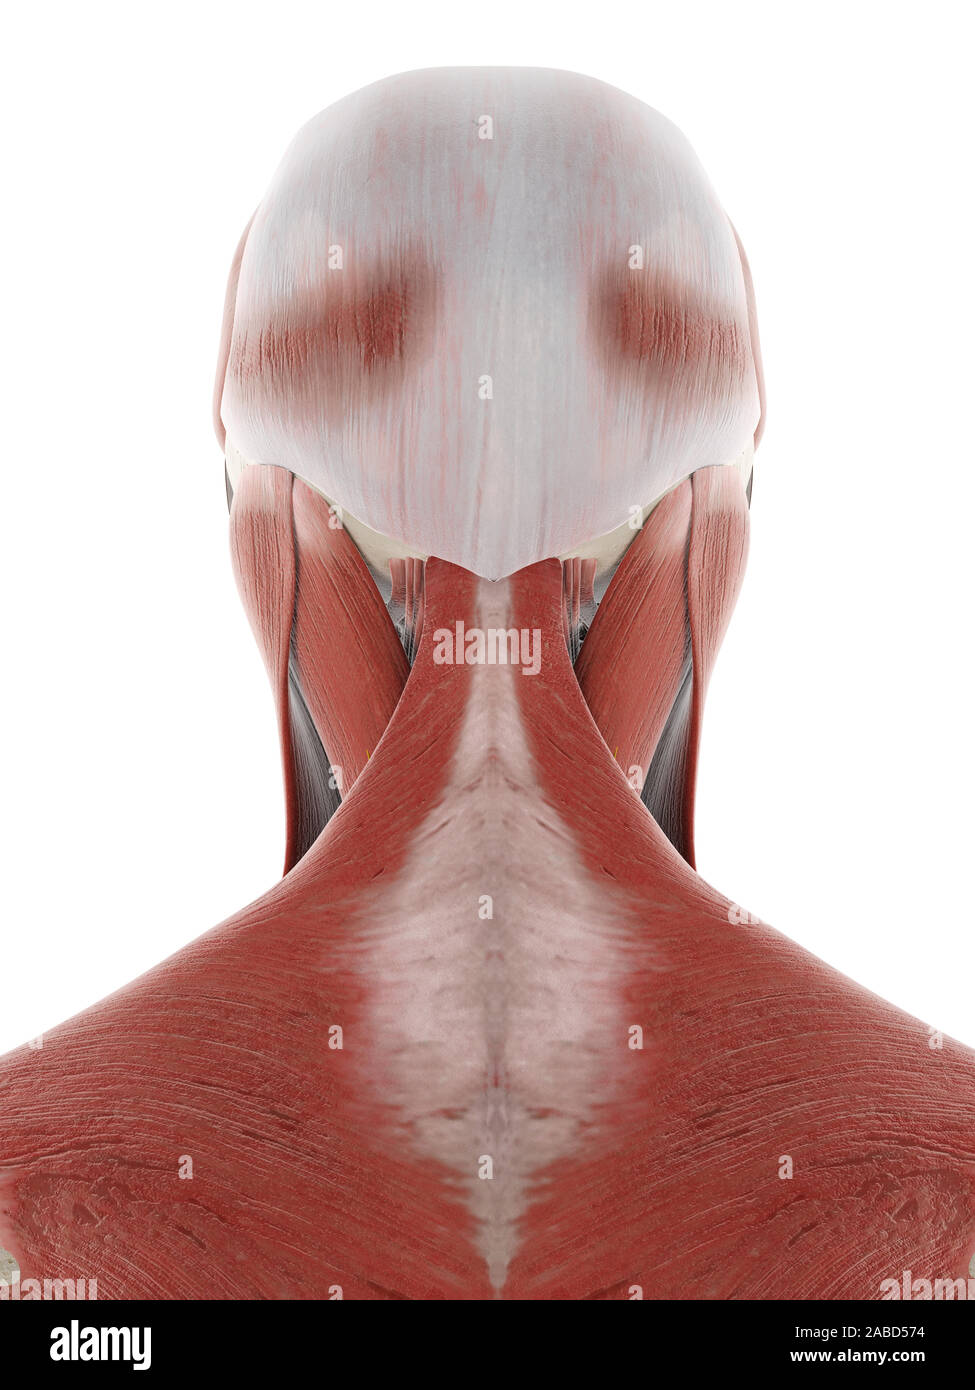 3D prestados ilustración médica exacta de los nervios y músculos de la cabeza Foto de stock